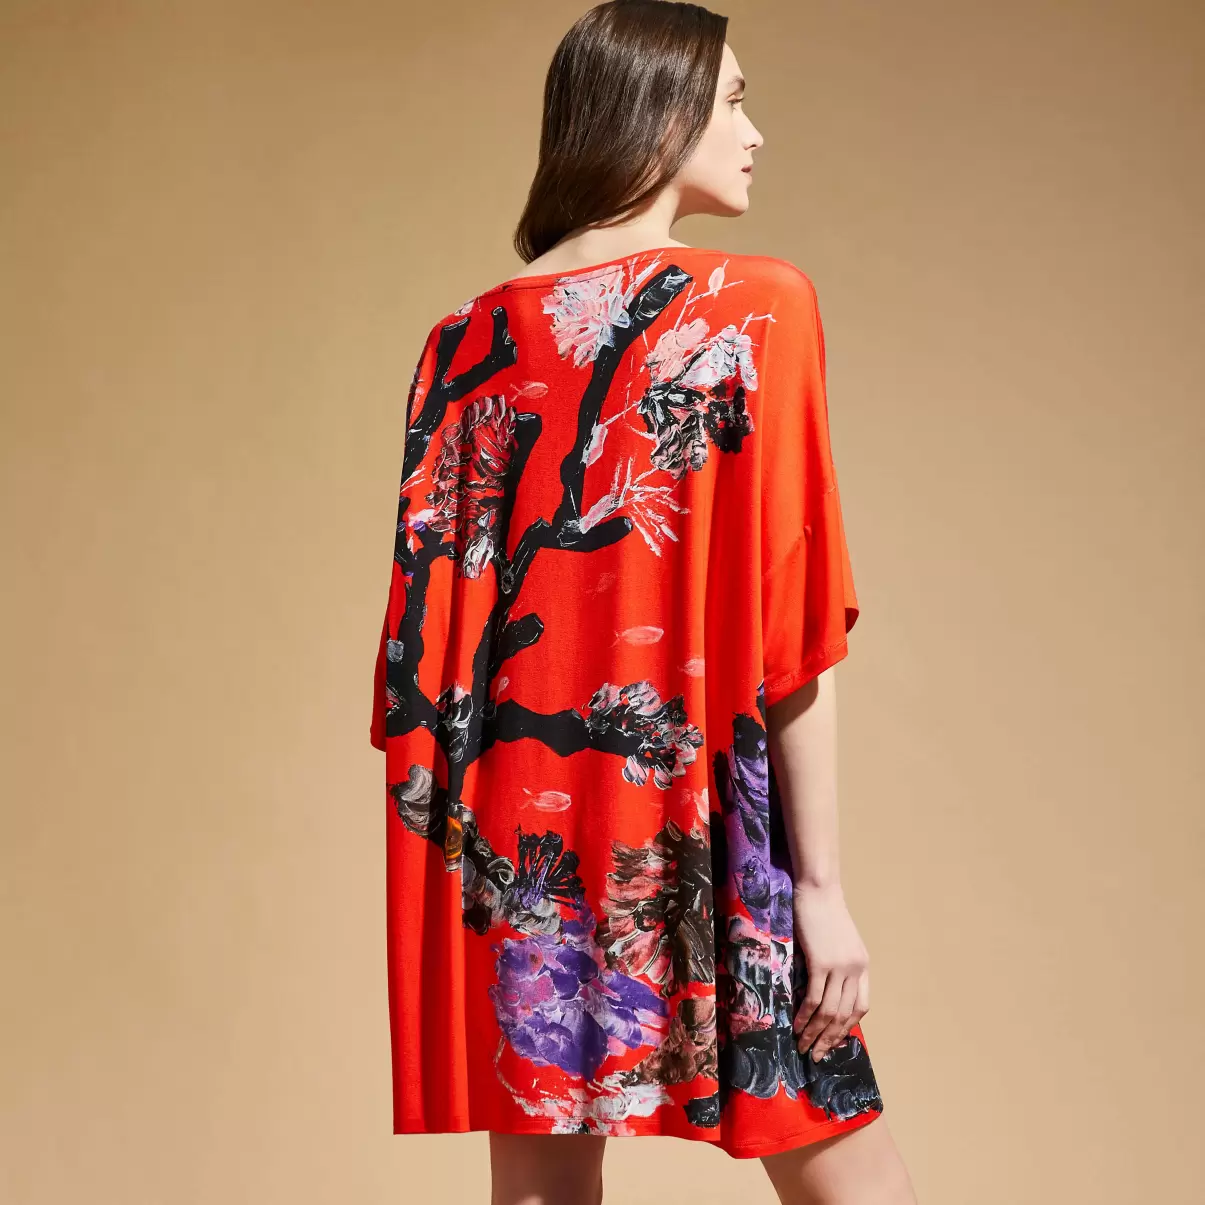 Kleider Material Damen Spring Flower Maxikleid Aus Viskose Für Damen - Vilebrequin X Patrizia Gucci Mohnrot / Rot - 1